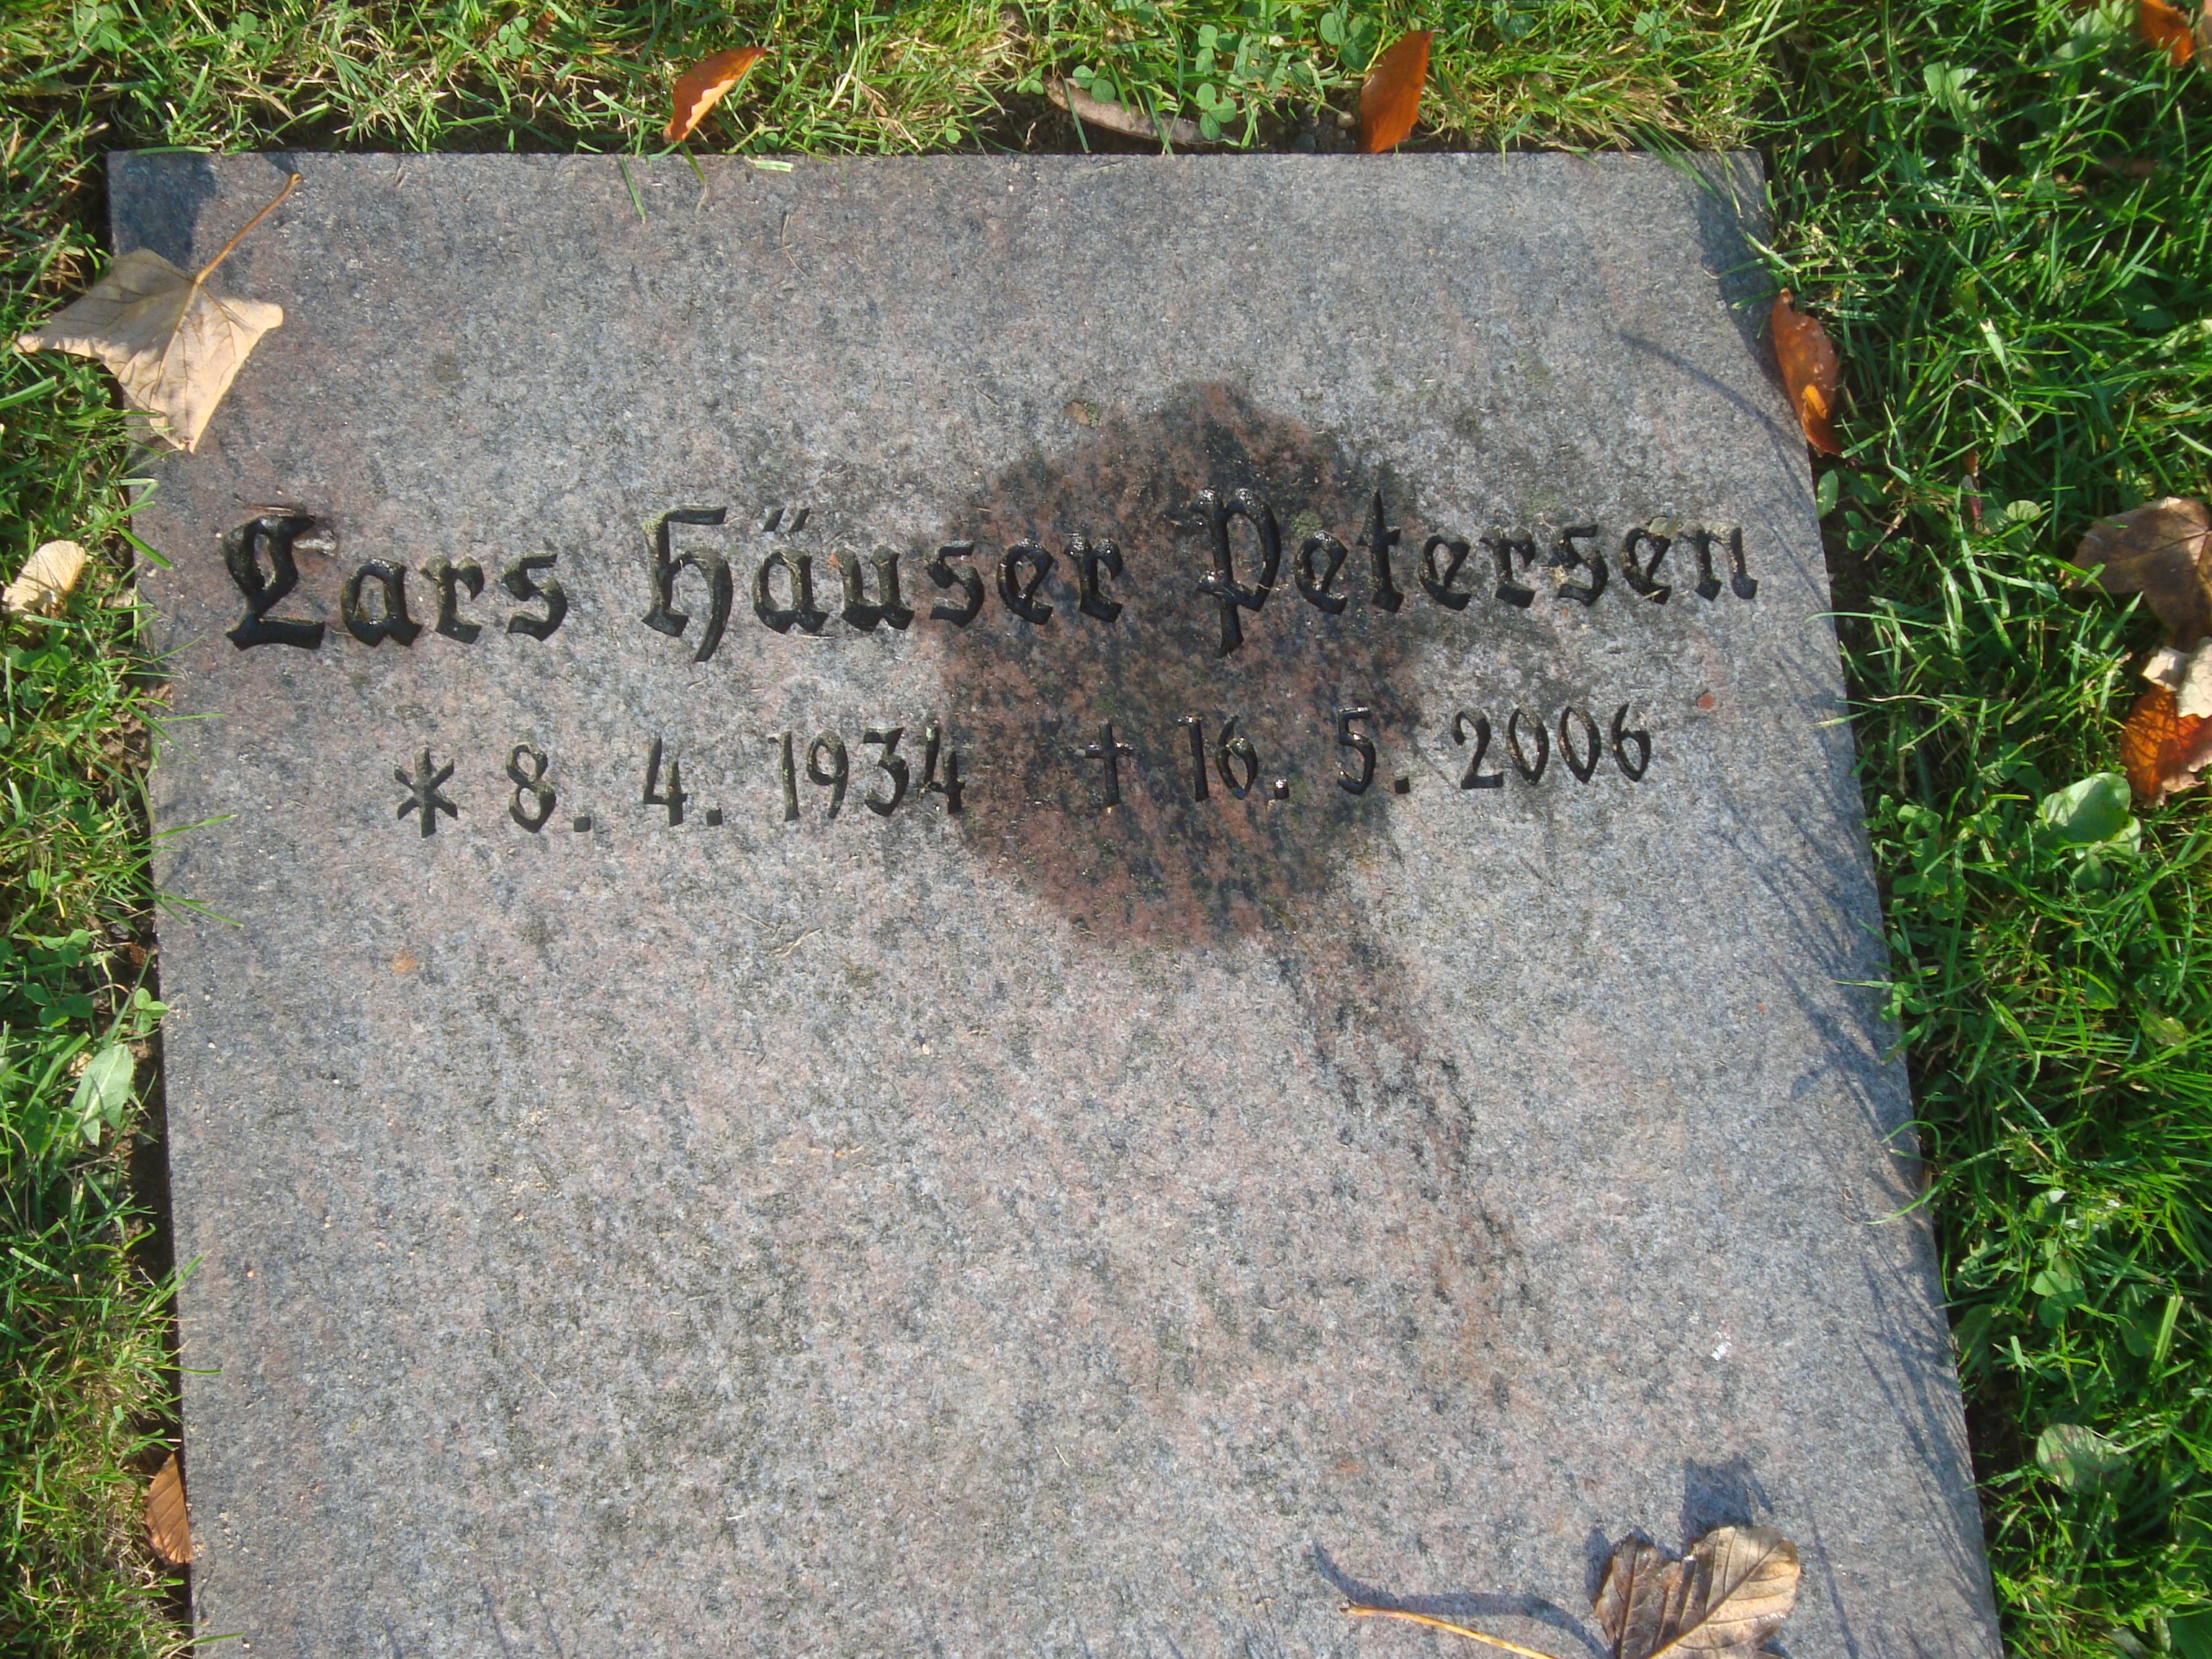 Lars Hauser Petersen.JPG